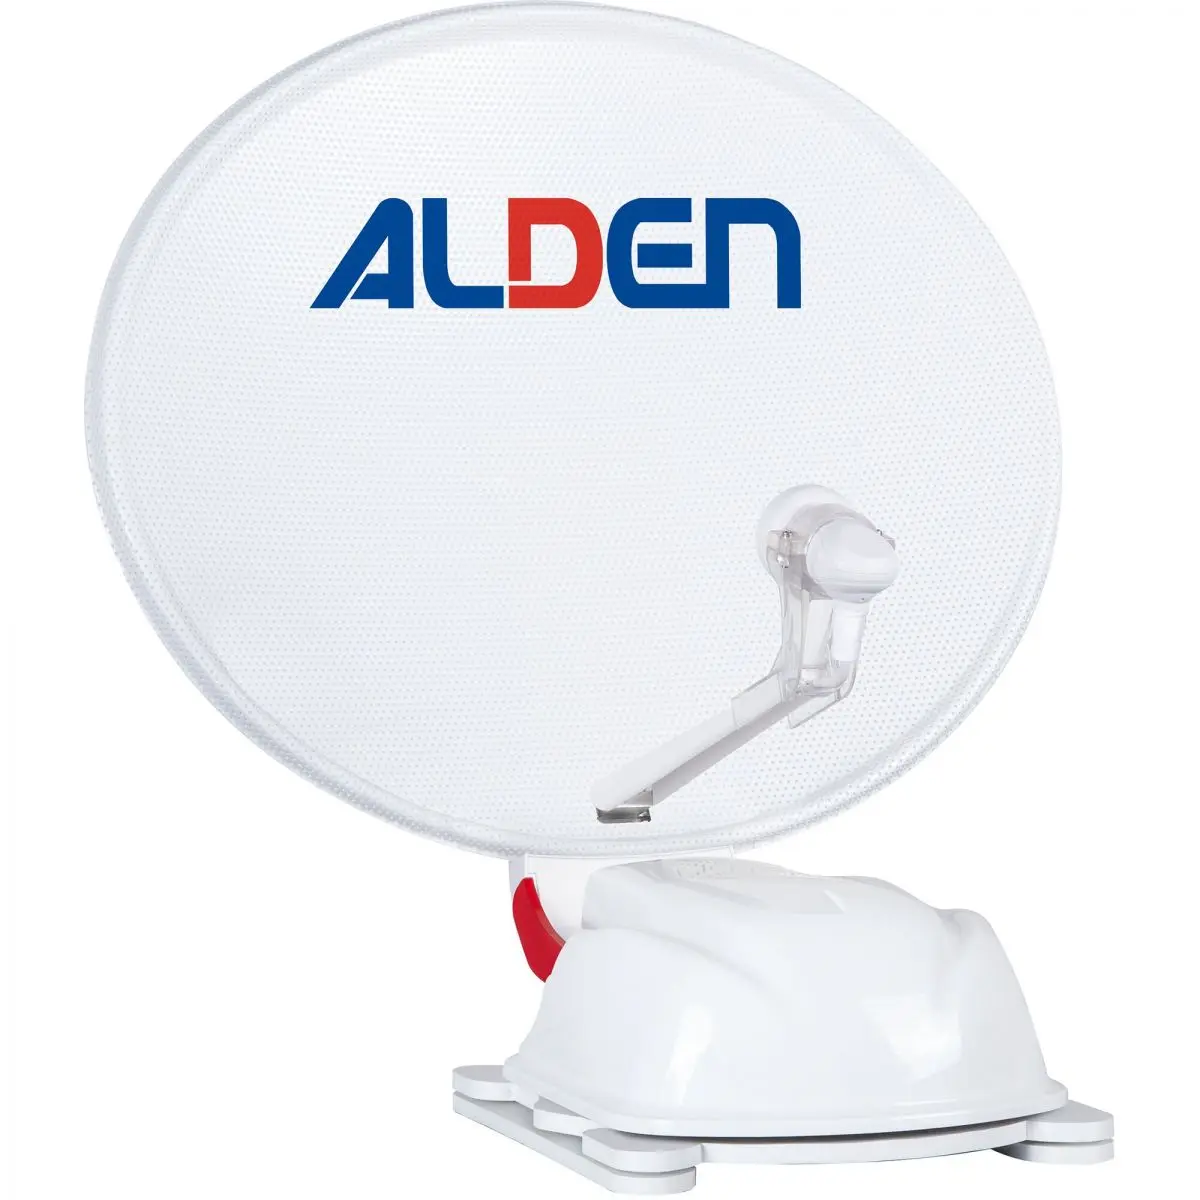 Sistem satelit Alden AS2 60 HD Ultrawhite care include modul de control SSC HD